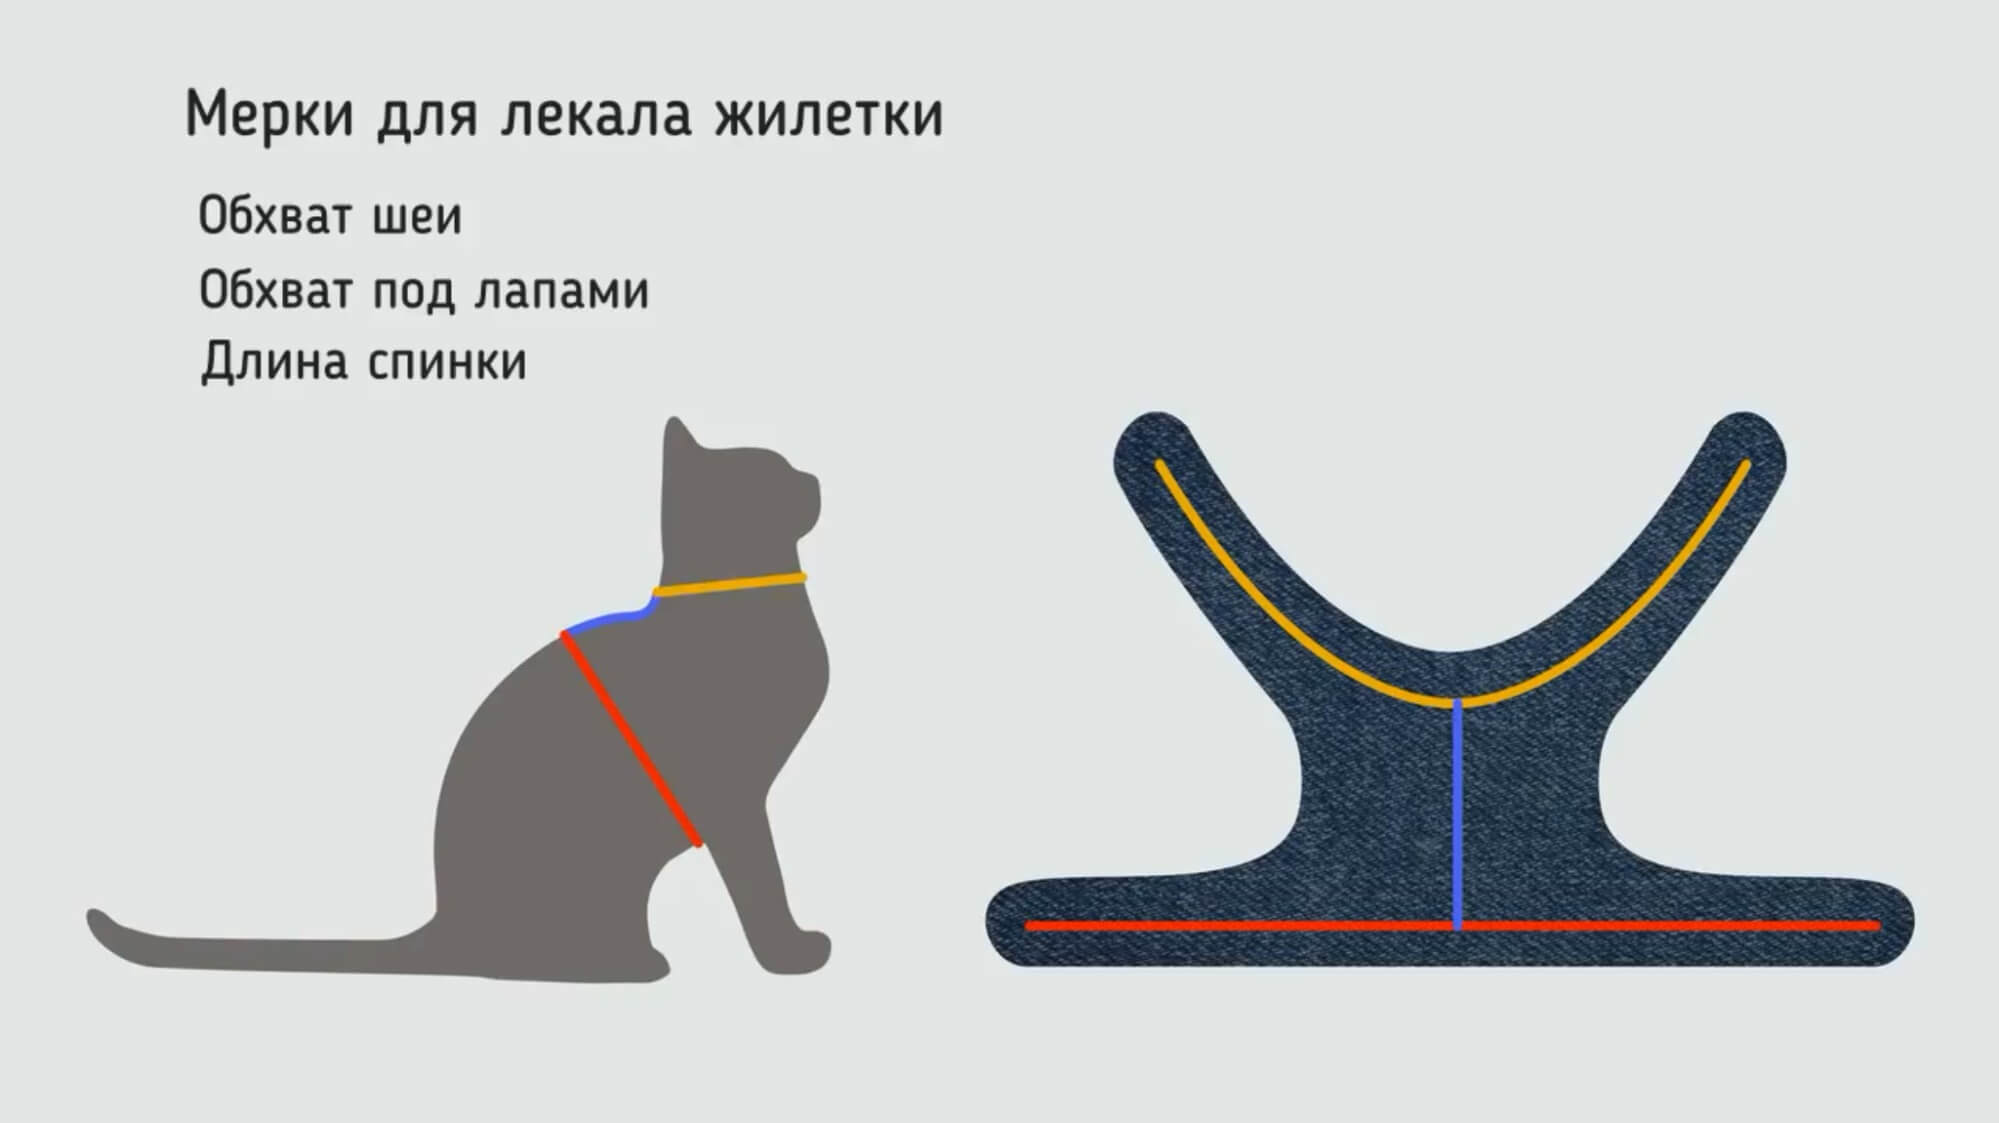 Коты в стиле тильда — 32 варианта с выкройками, описанием и видео МК